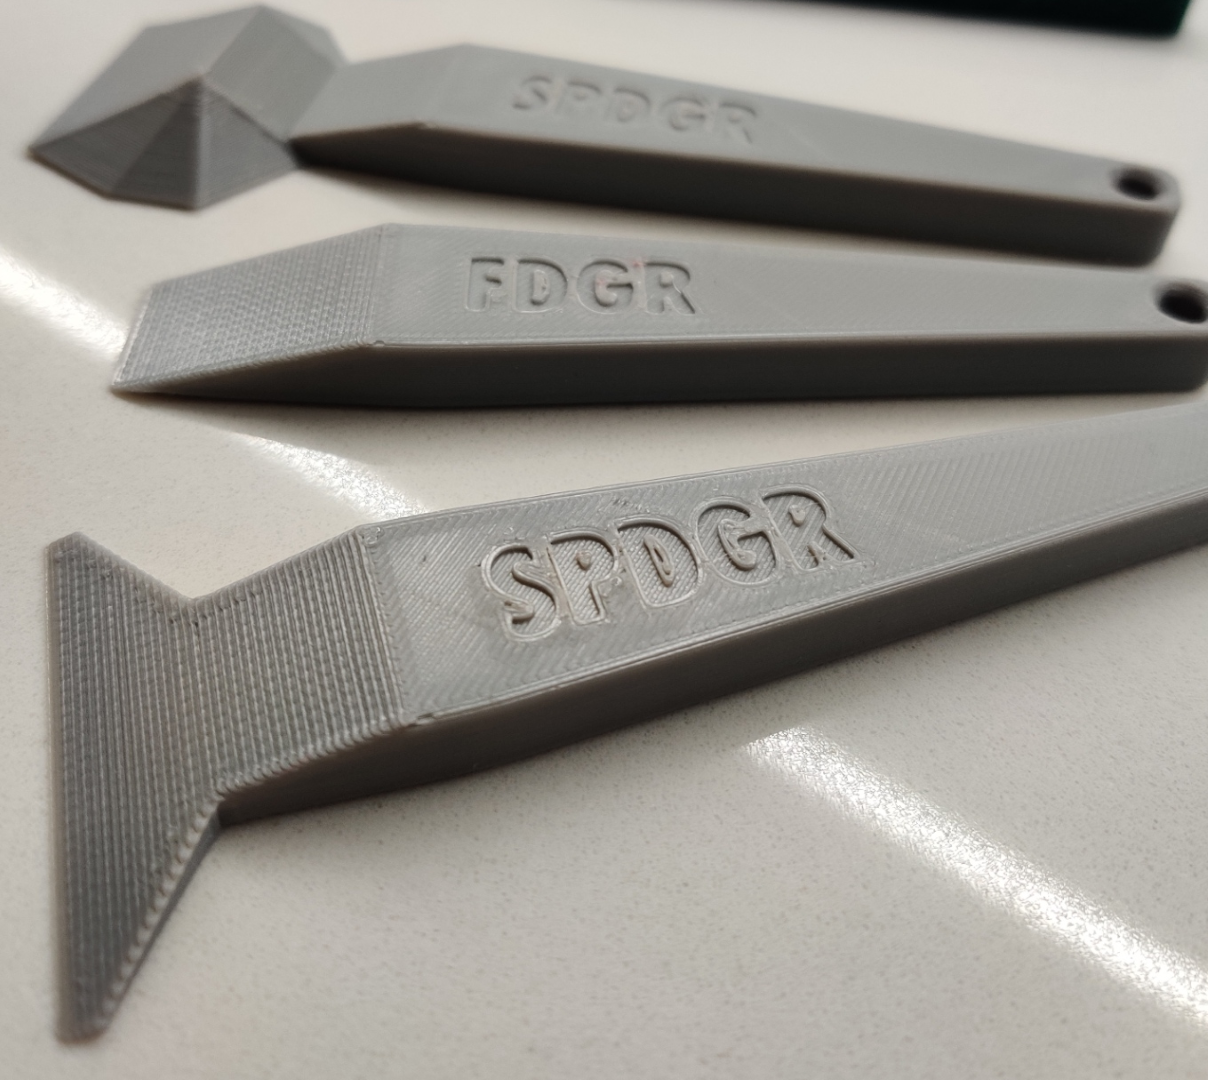 Ergonomische SPDGR / SCRPR / FDGR bedfrees - 3D Printing Tools